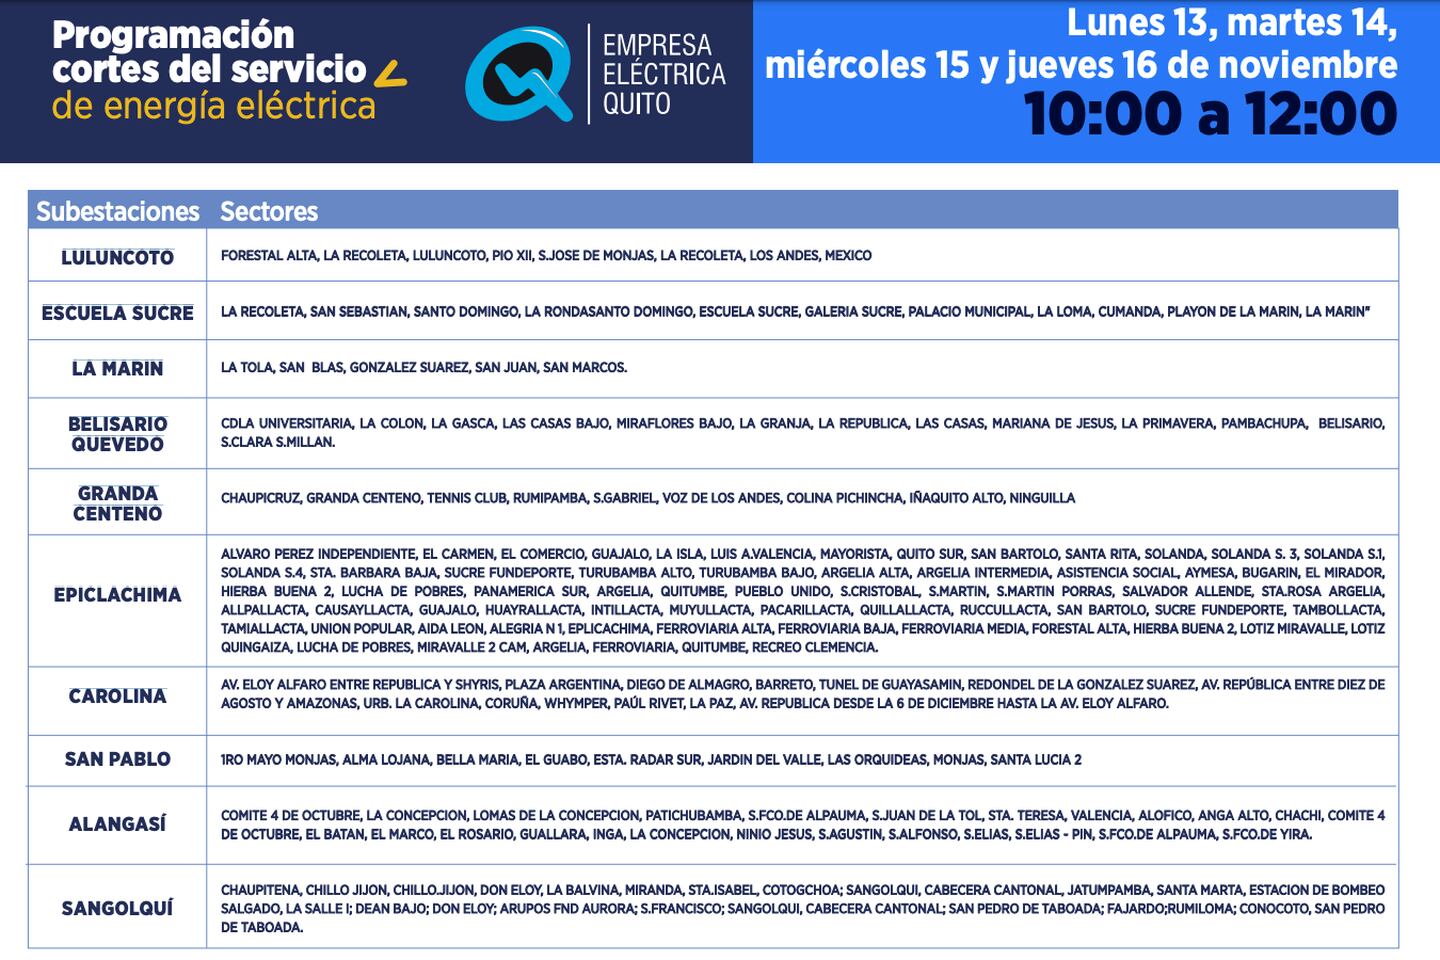 Quito: los horarios de cortes de luz para lunes 13 de noviembre.